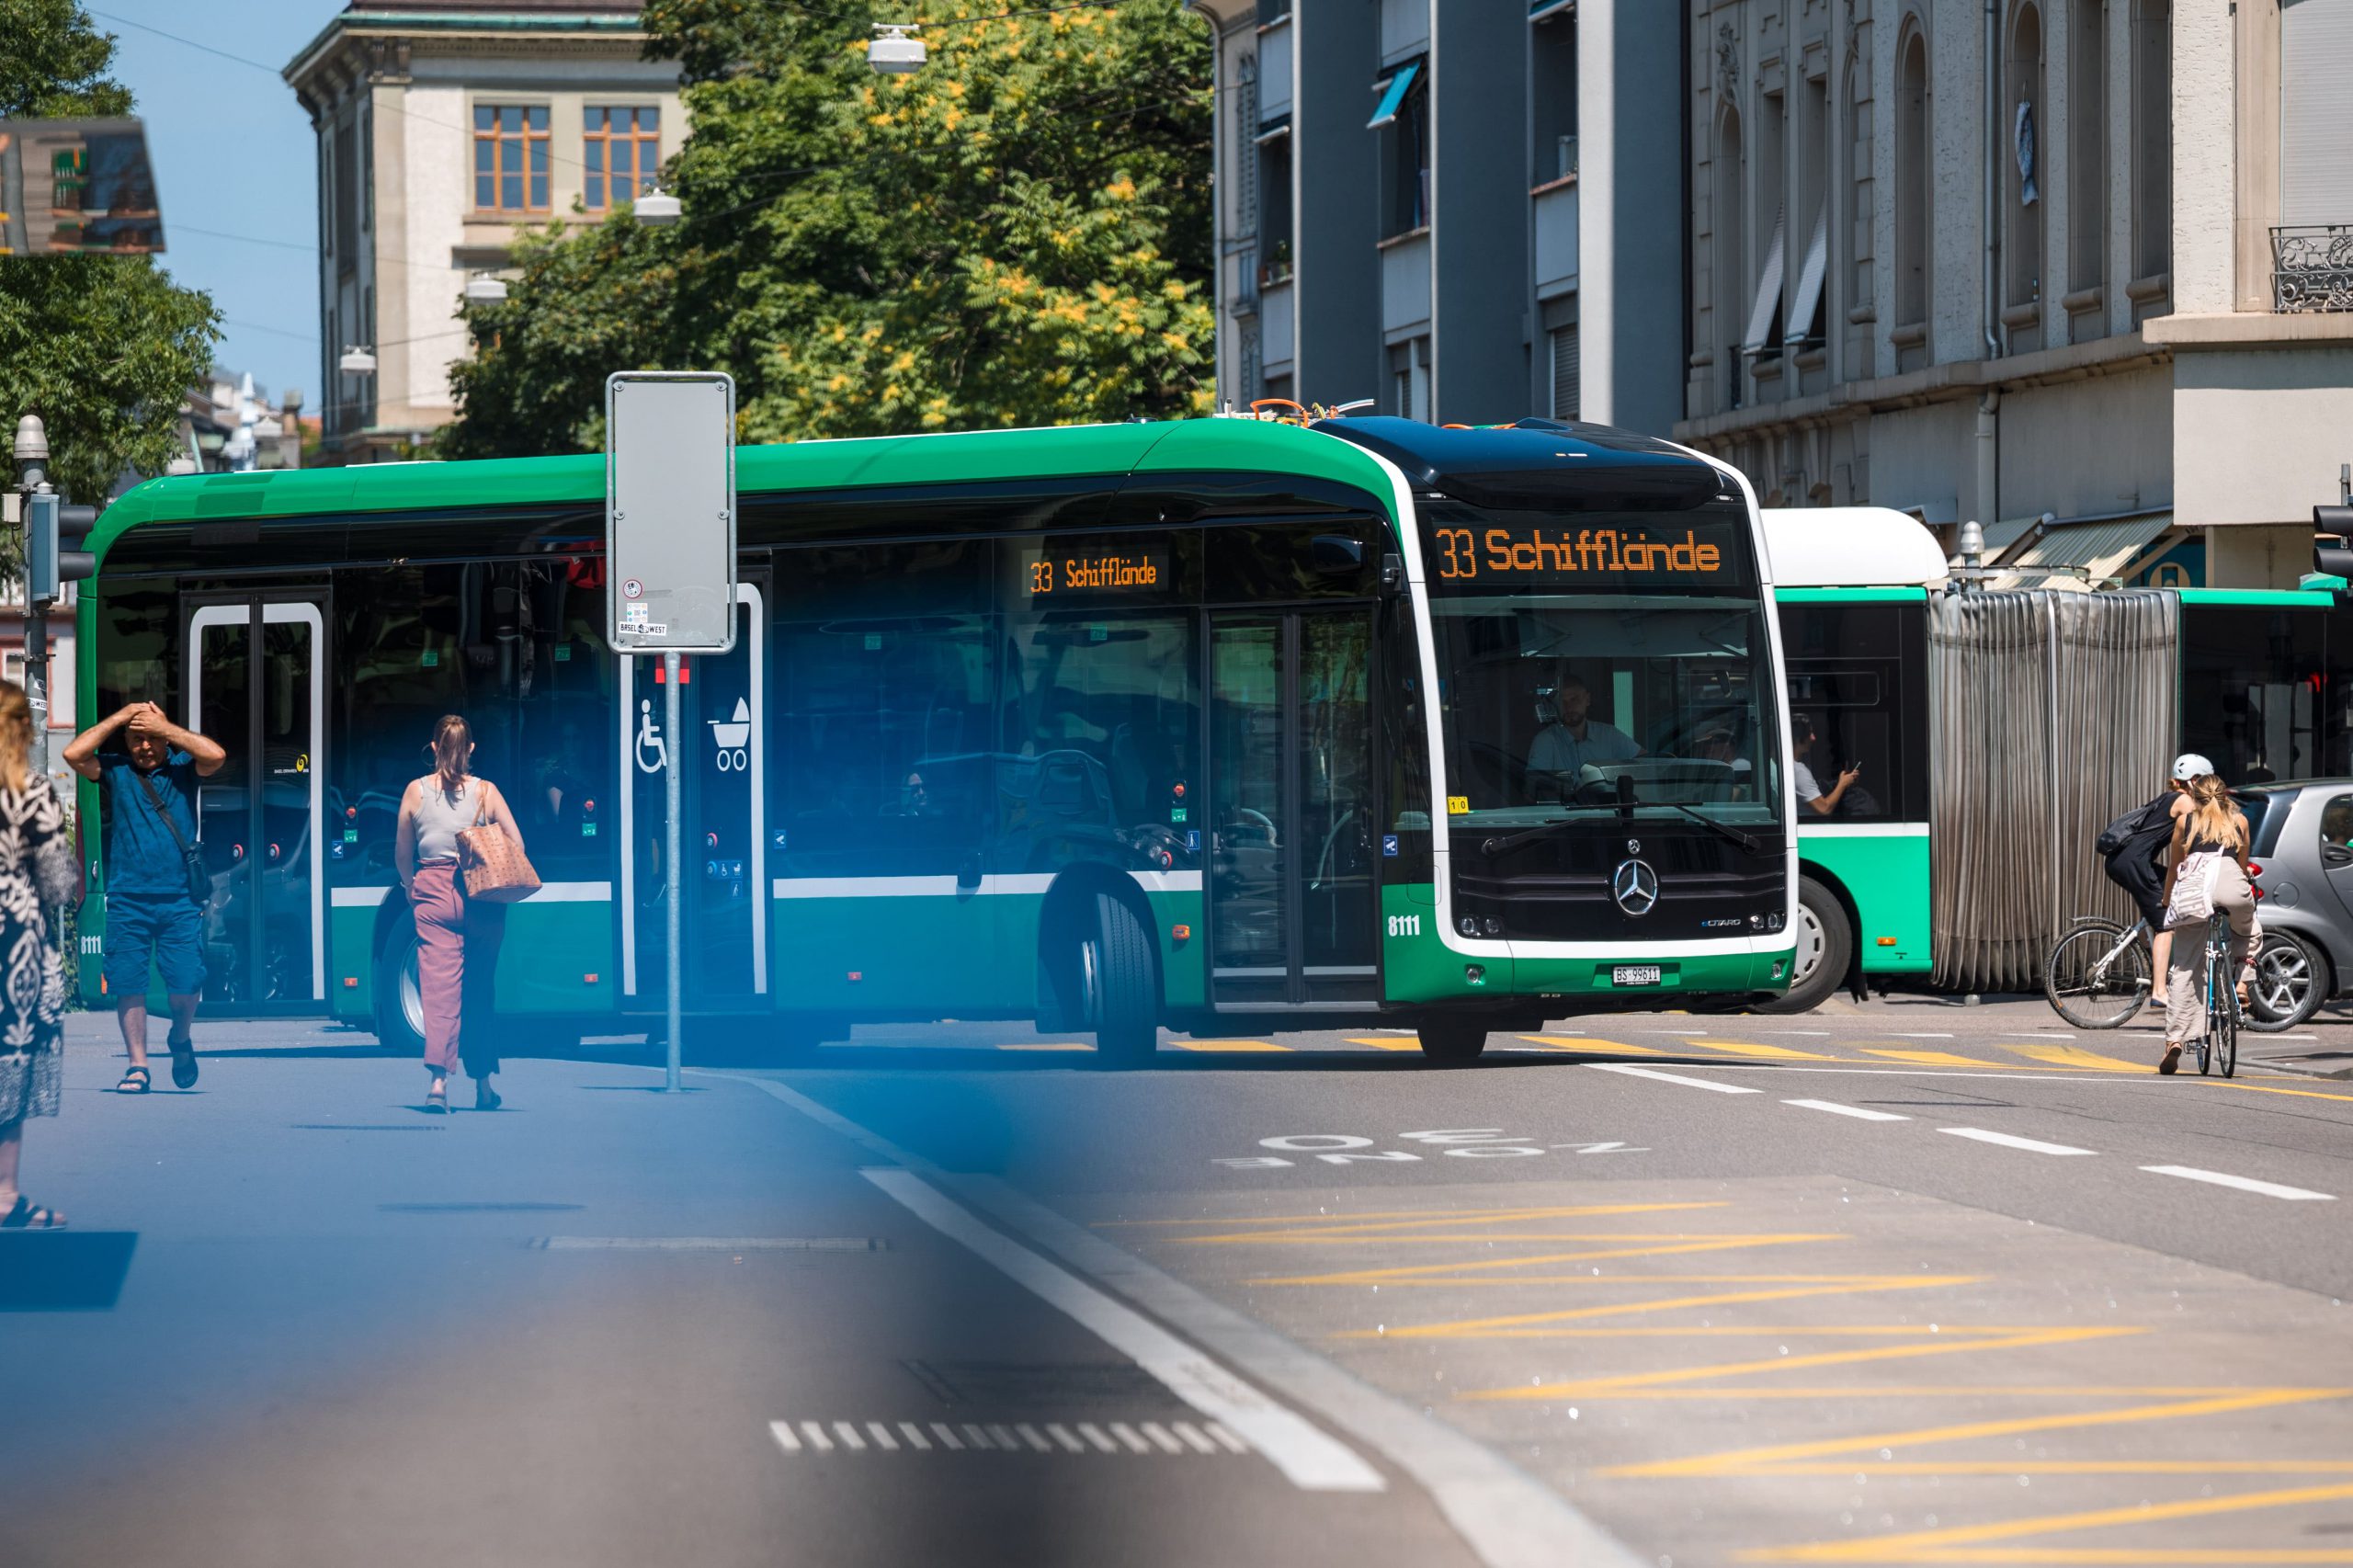 E-normal bus eCitaro (Daimler Buses Schweiz AG) at Universitätsspital